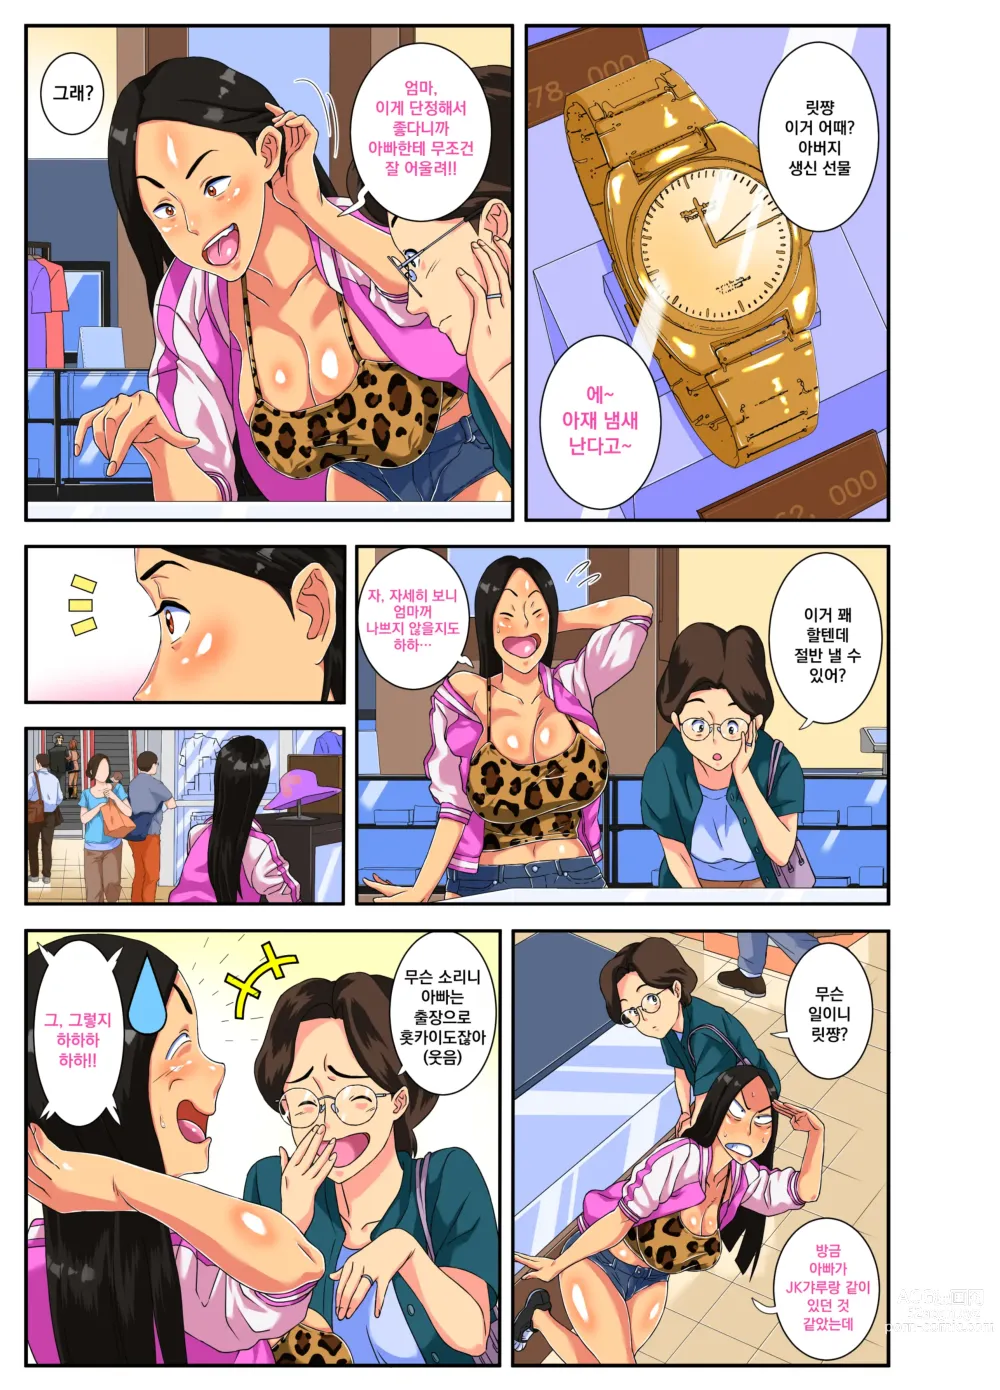 Page 3 of doujinshi 위험하다구!! 릿쨩!